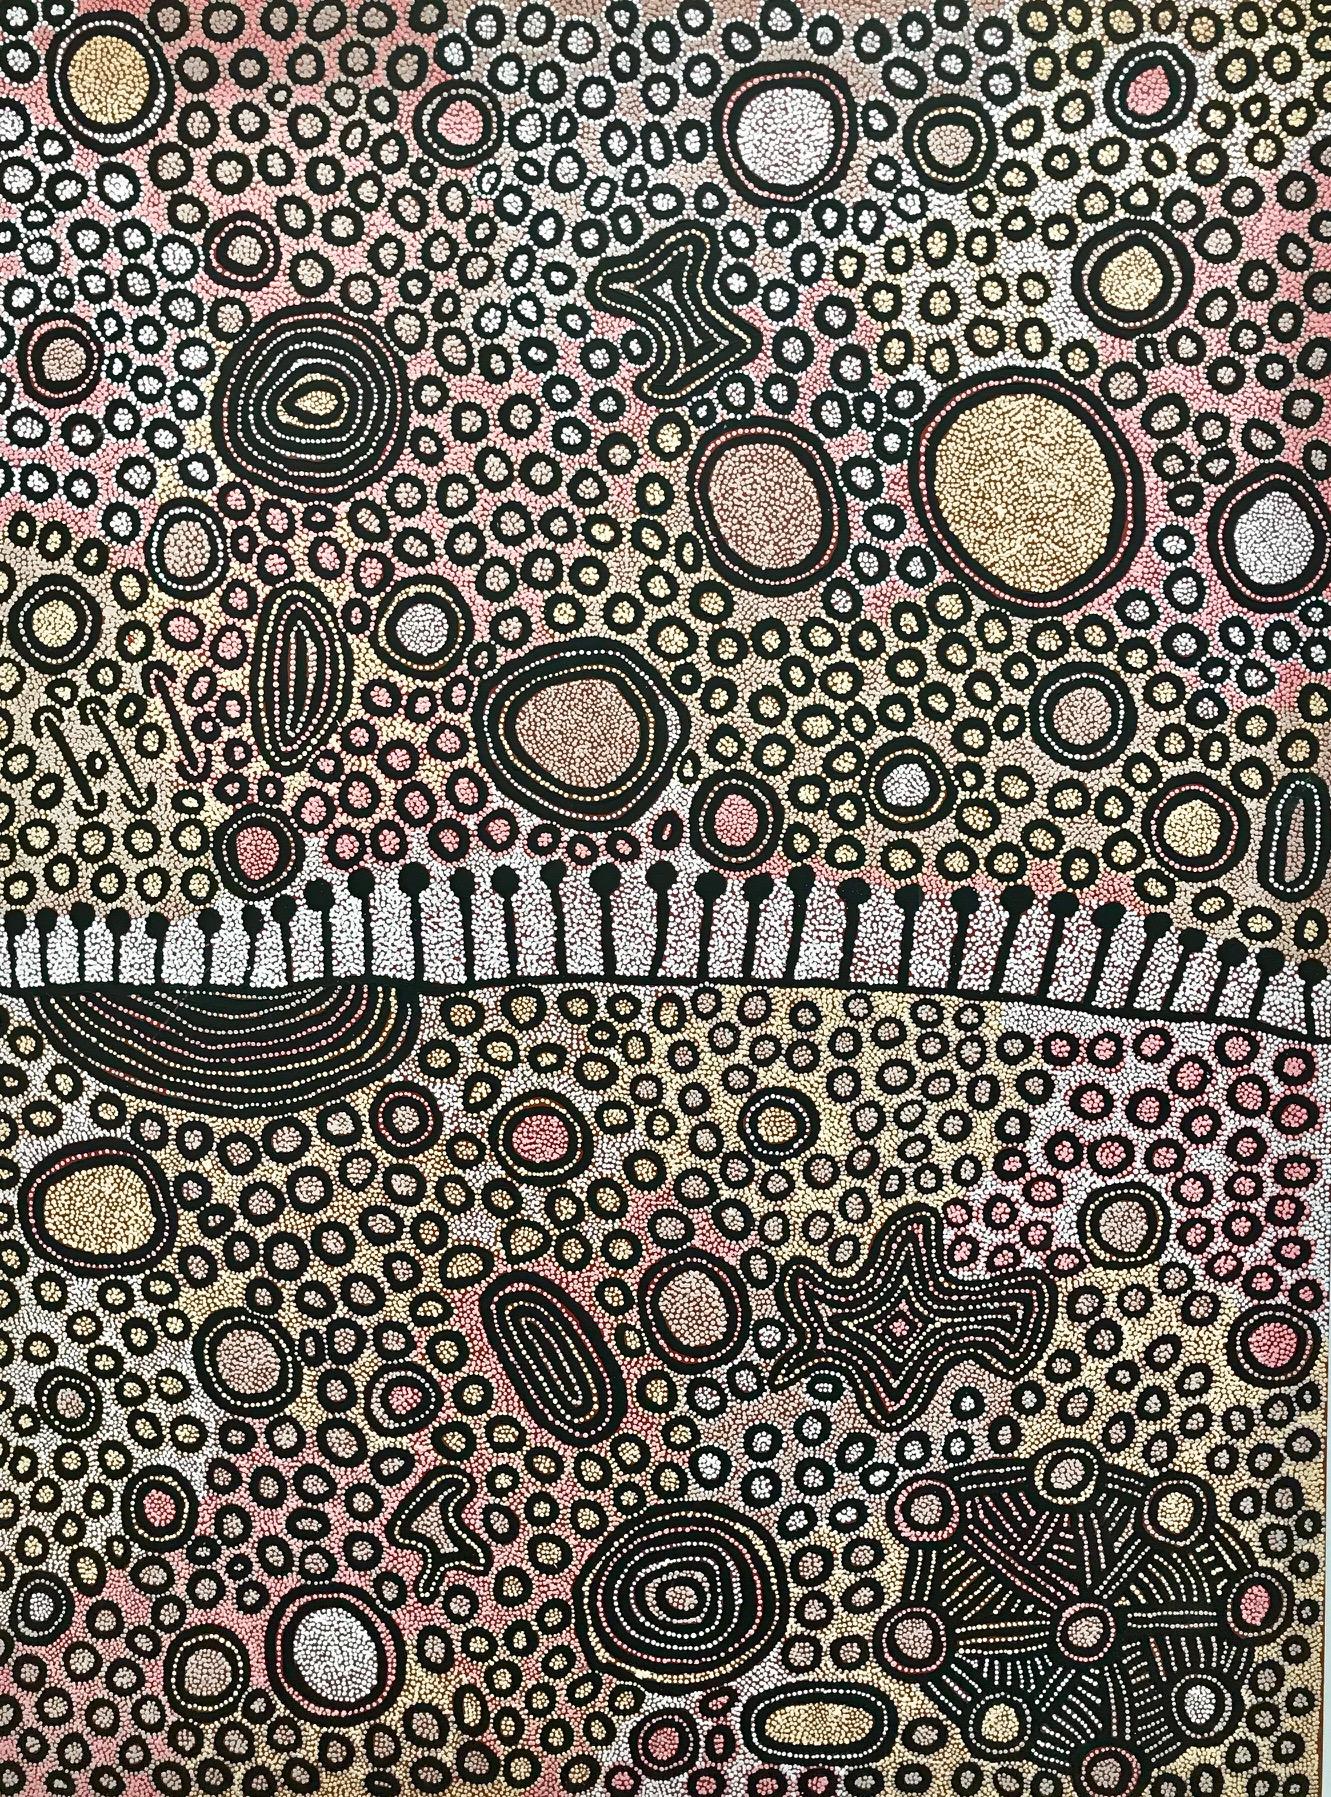 Yinarupa Nangala Landscape Painting – 'Ngaminya' Aboriginal Australian Art